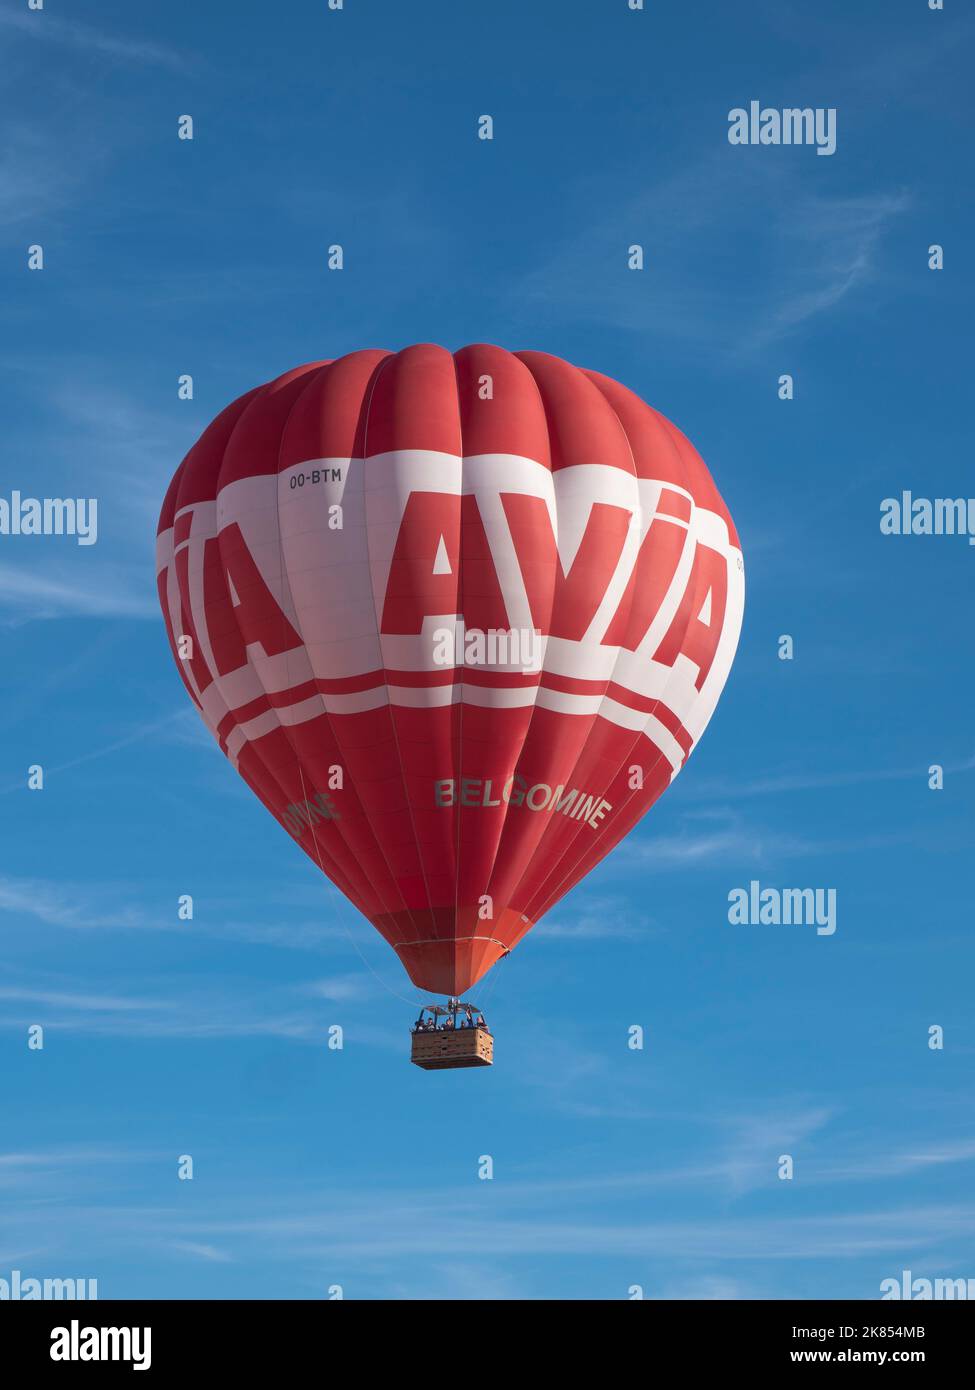 Sint Niklaas, Belgien, 9. September 2022, der Heißluftballon der Tankstelle Avia am Himmel mit einem wunderschönen blauen Himmel als Hintergrund Stockfoto